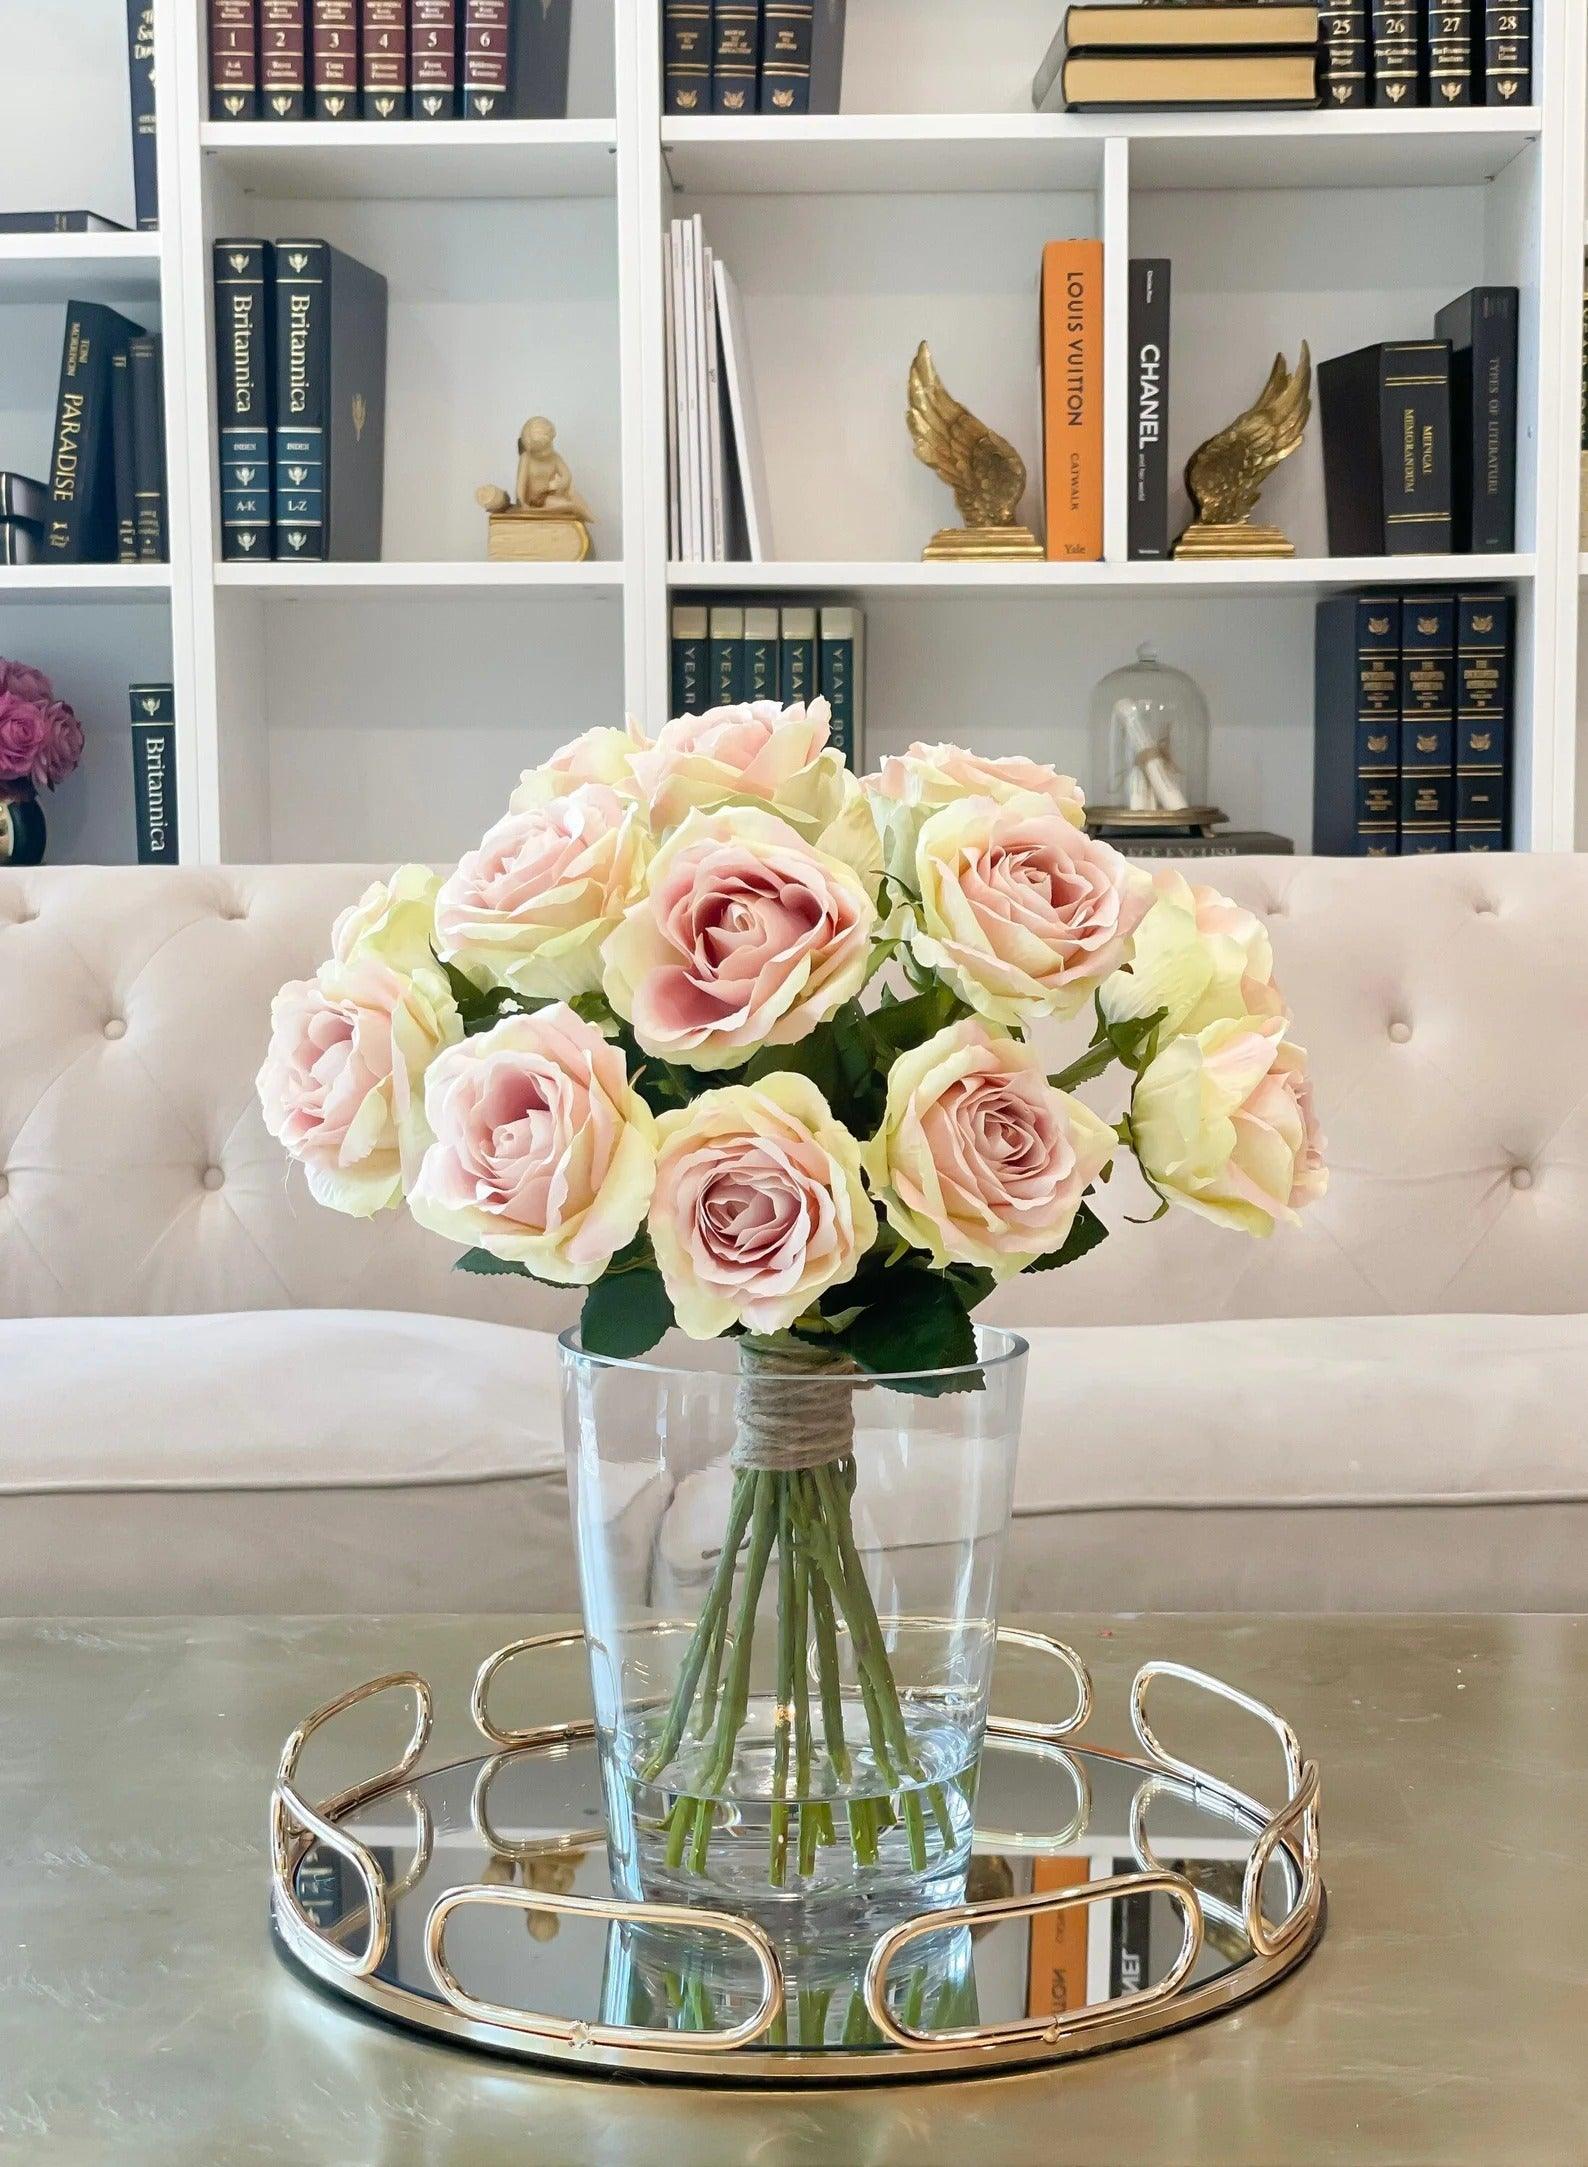 Slik Large Rose Tall Arrangement in Glass Vase - Flovery